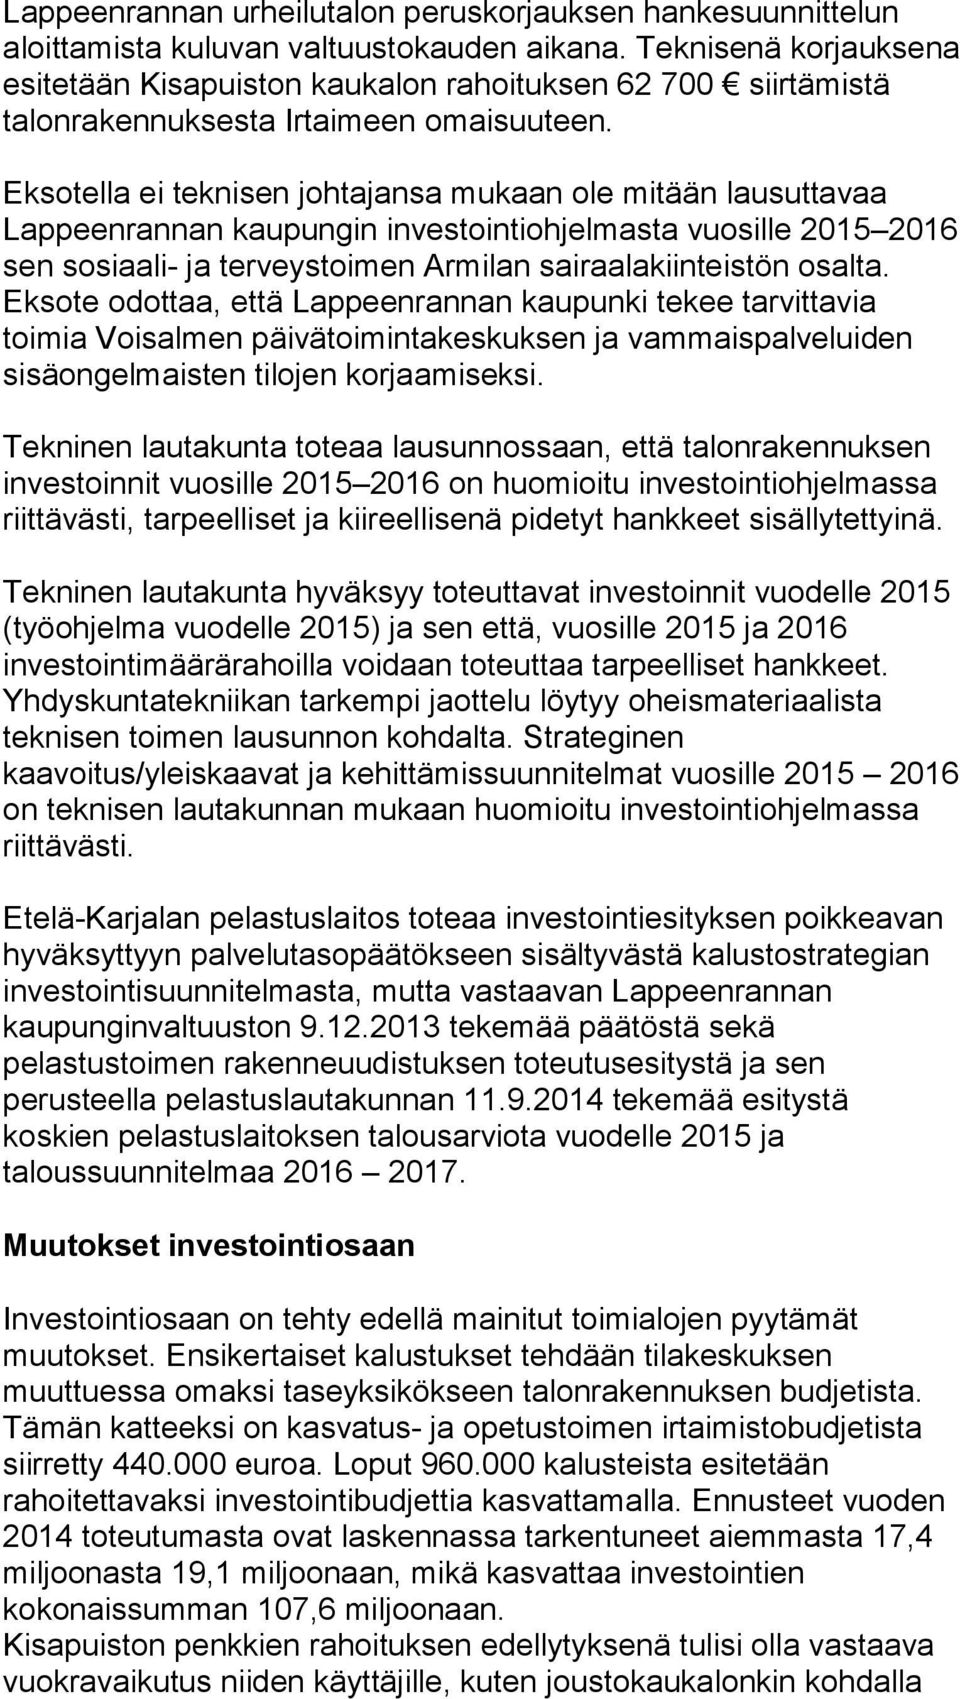 Eksotella ei teknisen johtajansa mukaan ole mitään lausuttavaa Lappeenrannan kaupungin investointiohjelmasta vuosille 2015 2016 sen sosiaali- ja terveystoimen Armilan sairaalakiinteistön osalta.